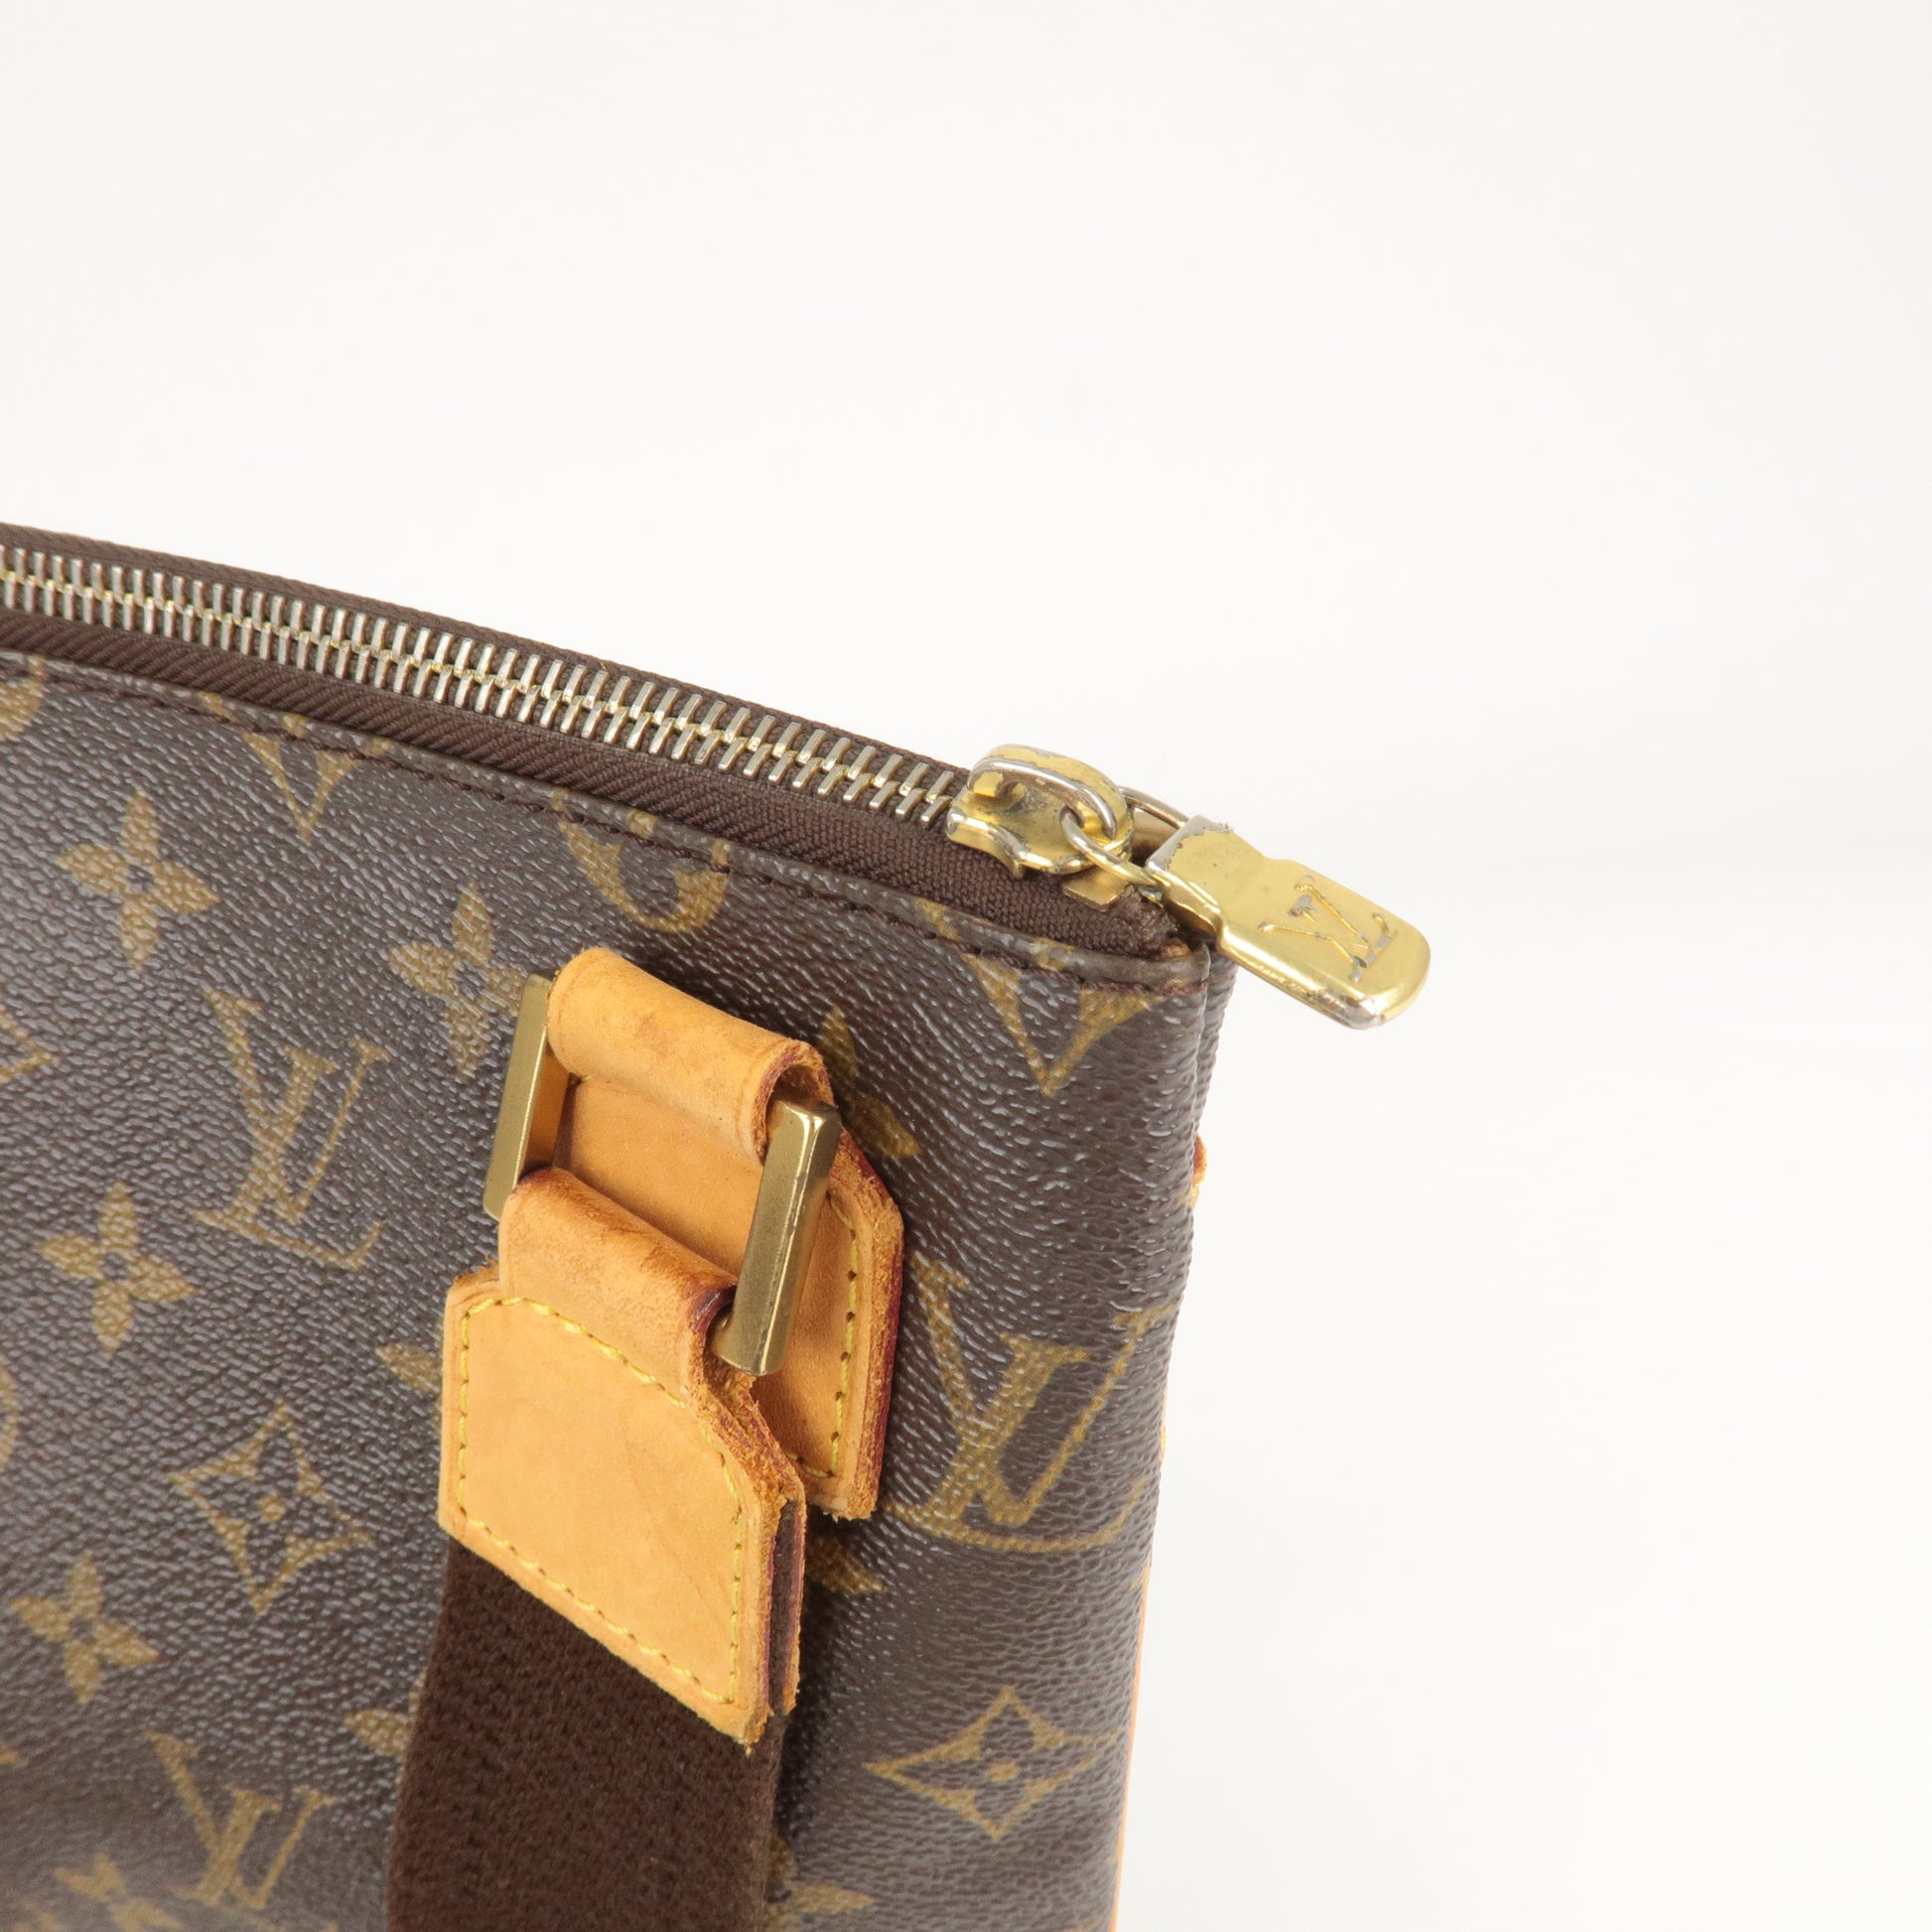 Shop for Louis Vuitton Monogram Canvas Leather Bosphore Waist Bag